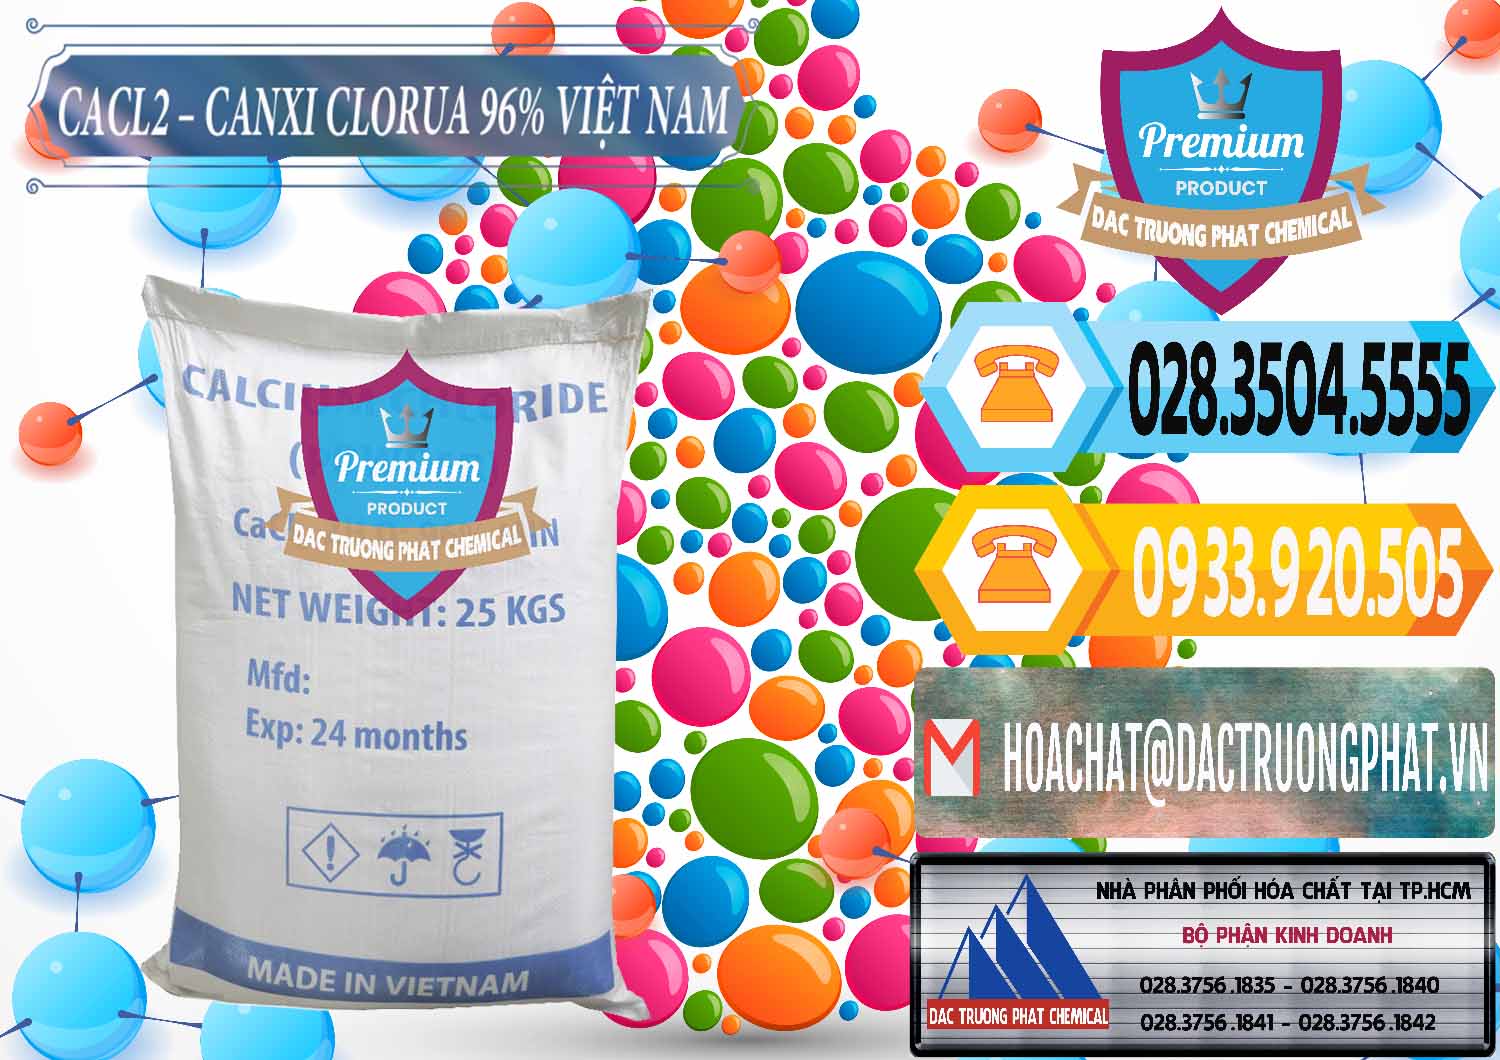 Công ty chuyên cung ứng & phân phối CaCl2 – Canxi Clorua 96% Việt Nam - 0236 - Đơn vị chuyên phân phối ( cung ứng ) hóa chất tại TP.HCM - hoachattayrua.net